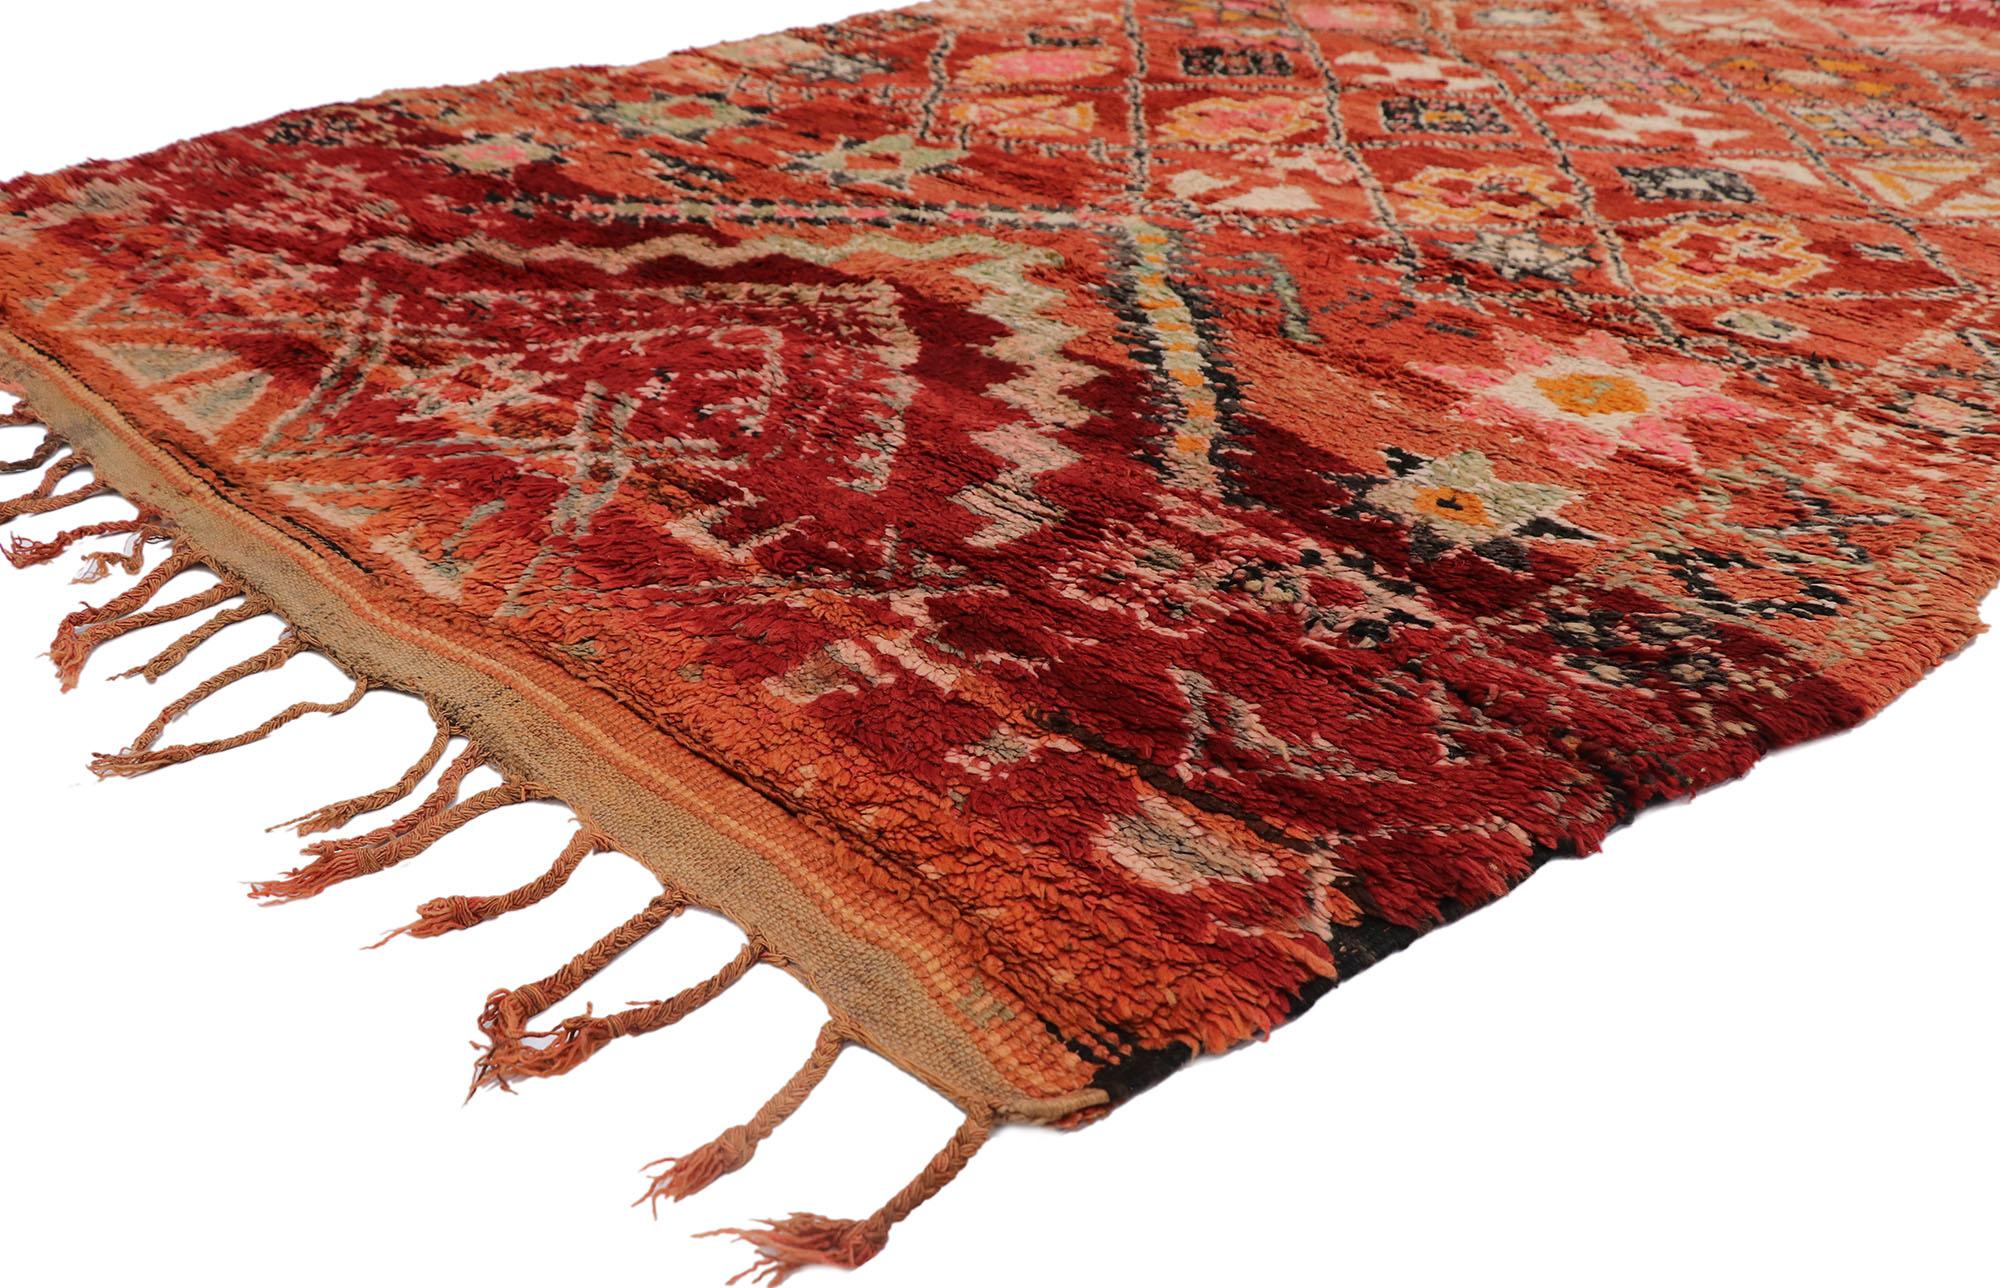 21311 Tapis marocain Boujad rouge vintage, 05'11 x 09'02. Les tapis Boujad, nés dans l'étreinte des montagnes du Moyen Atlas, sont des trésors marocains traditionnels tissés à la main par les mains habiles des artisans berbères indigènes. Adulés